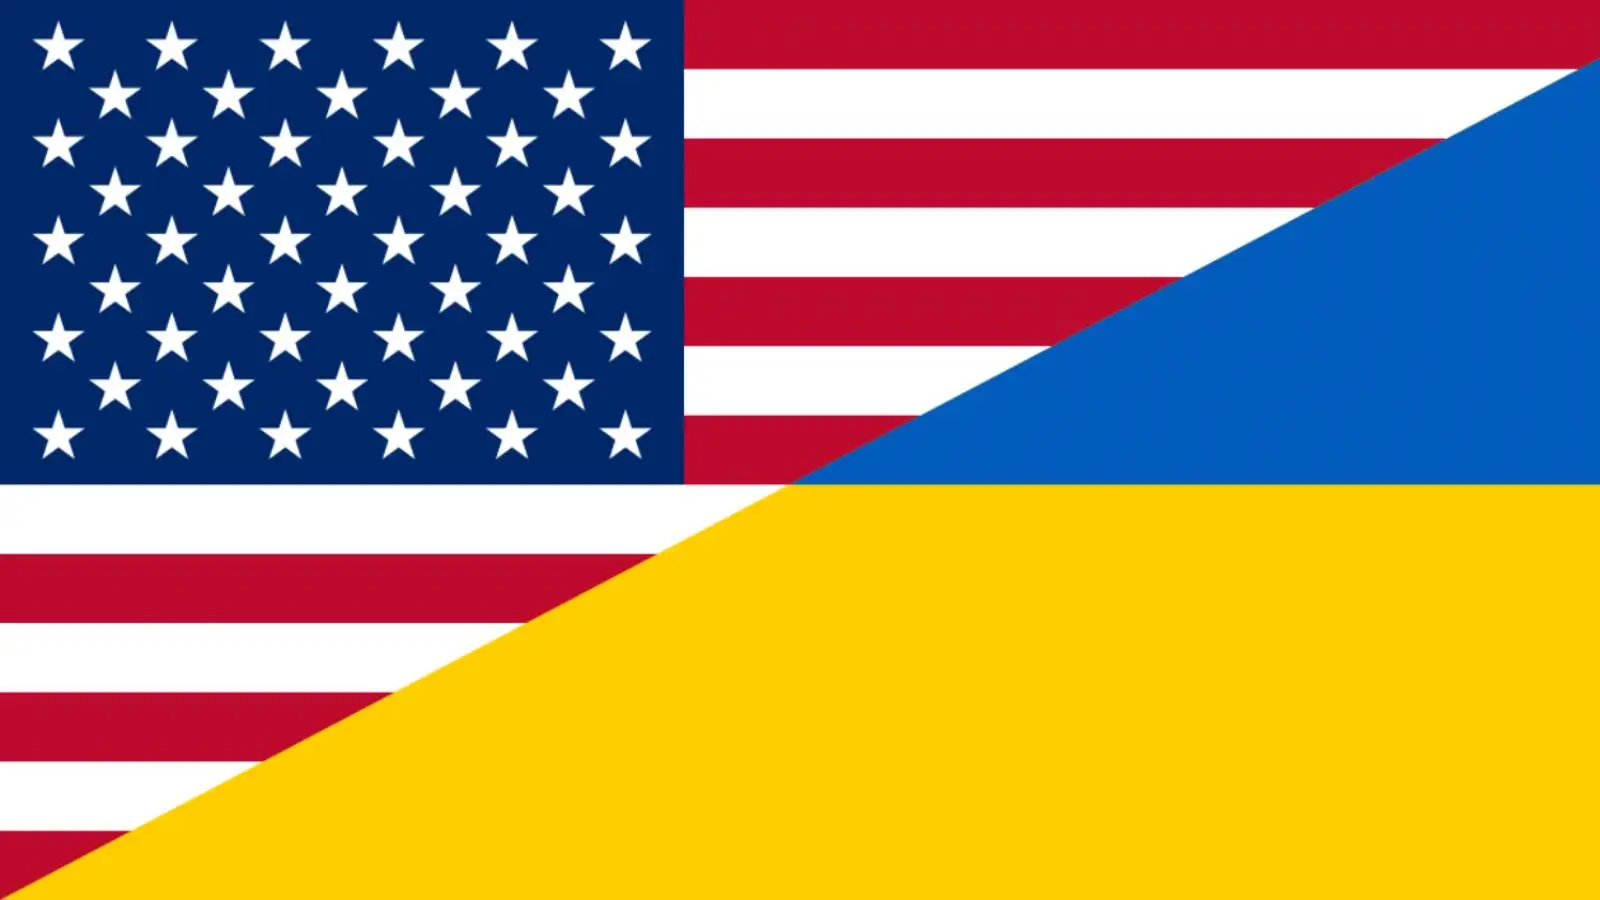 Les États-Unis ont été surpris par la décision de l'Ukraine de demander son adhésion à l'OTAN